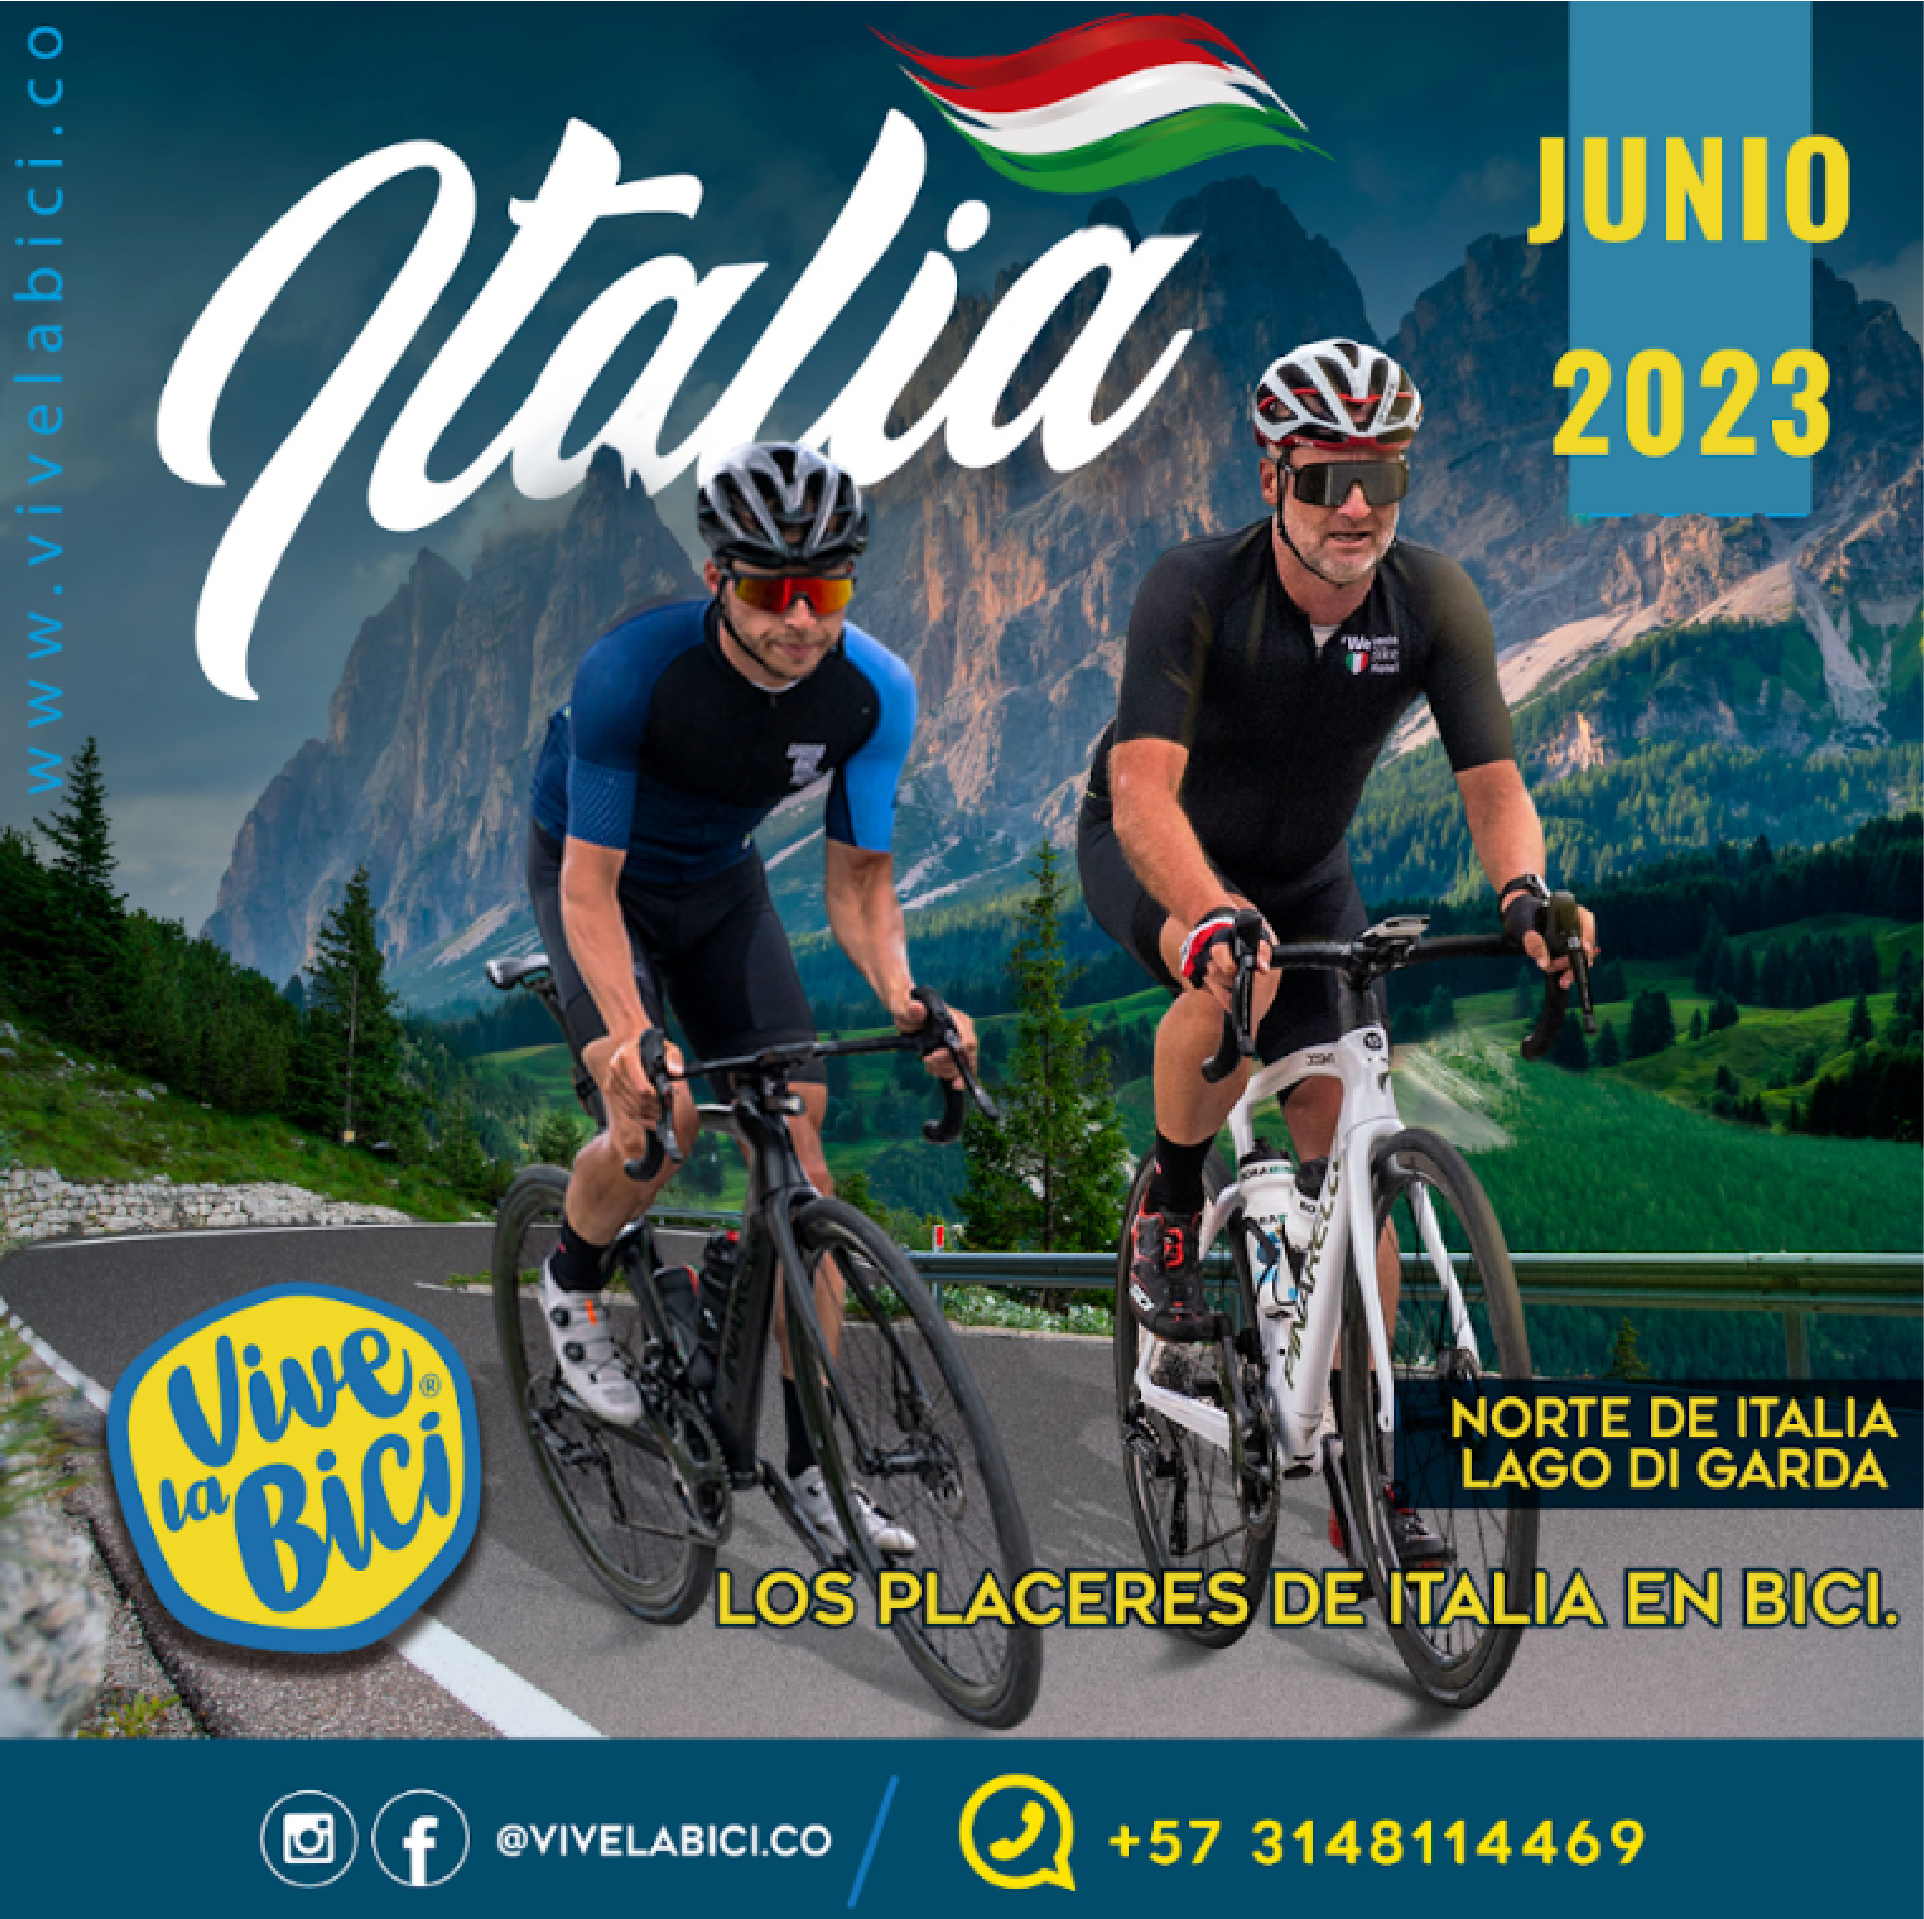 Post promocional de Vive la Bici en Italia y Dolomitas